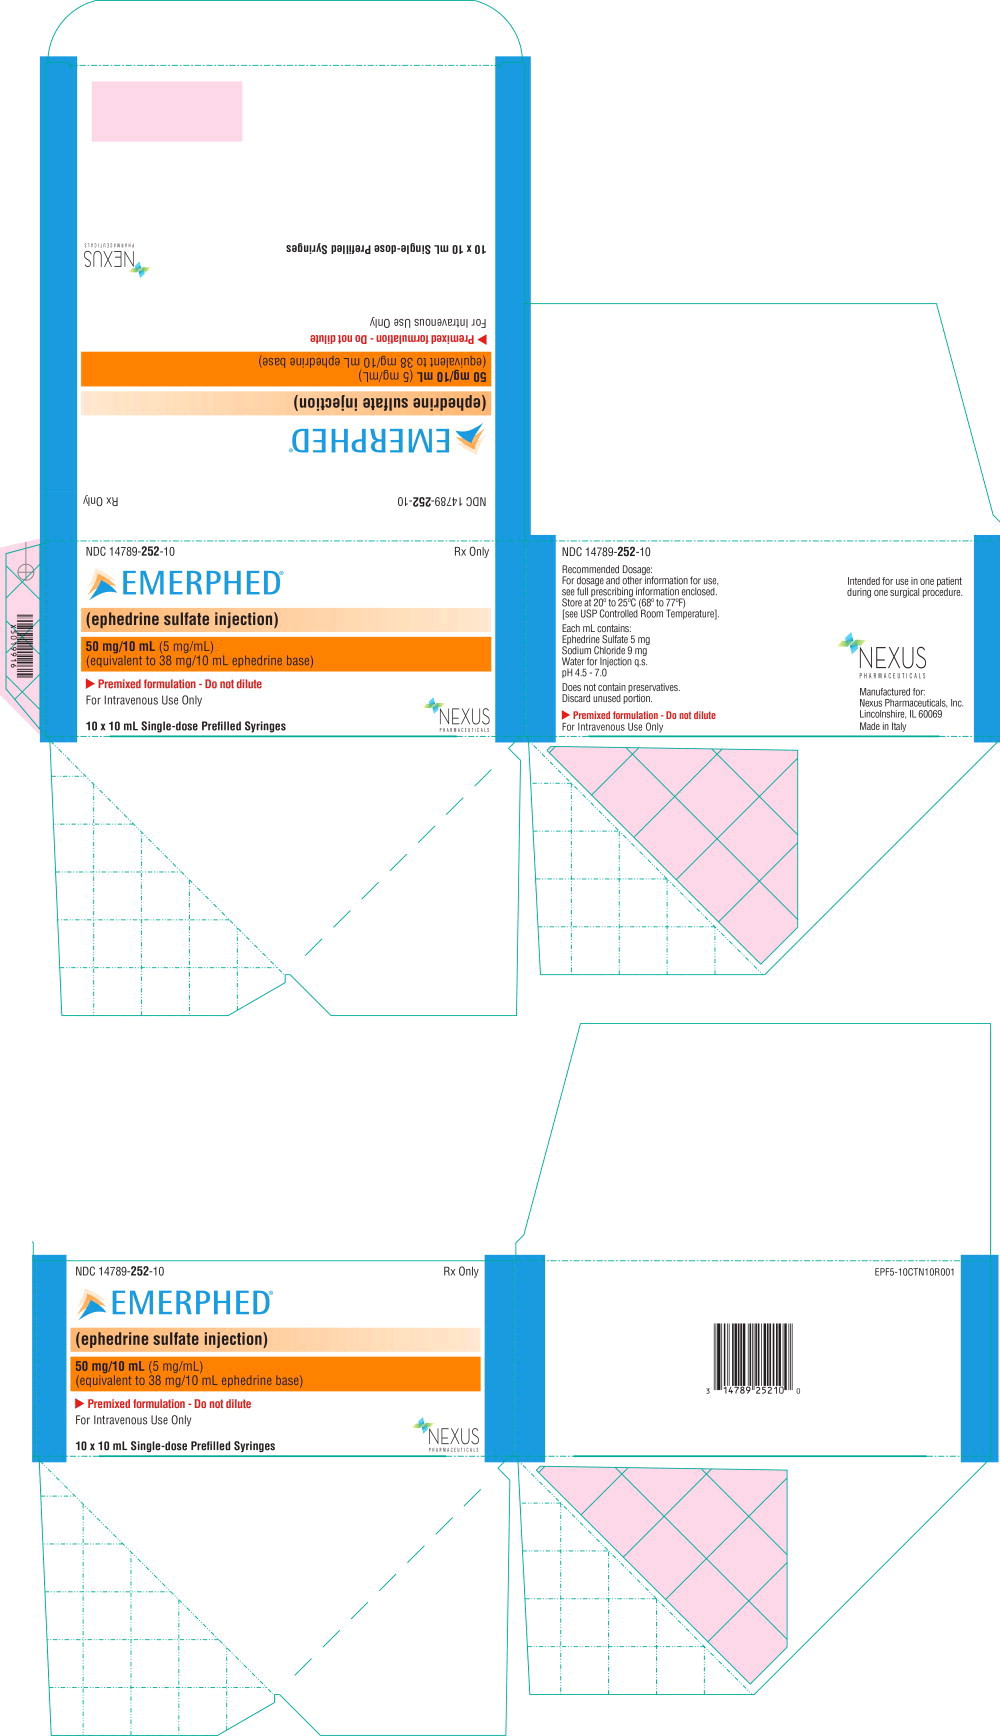 Principal Display Panel – 5 mg/mL Carton Label
